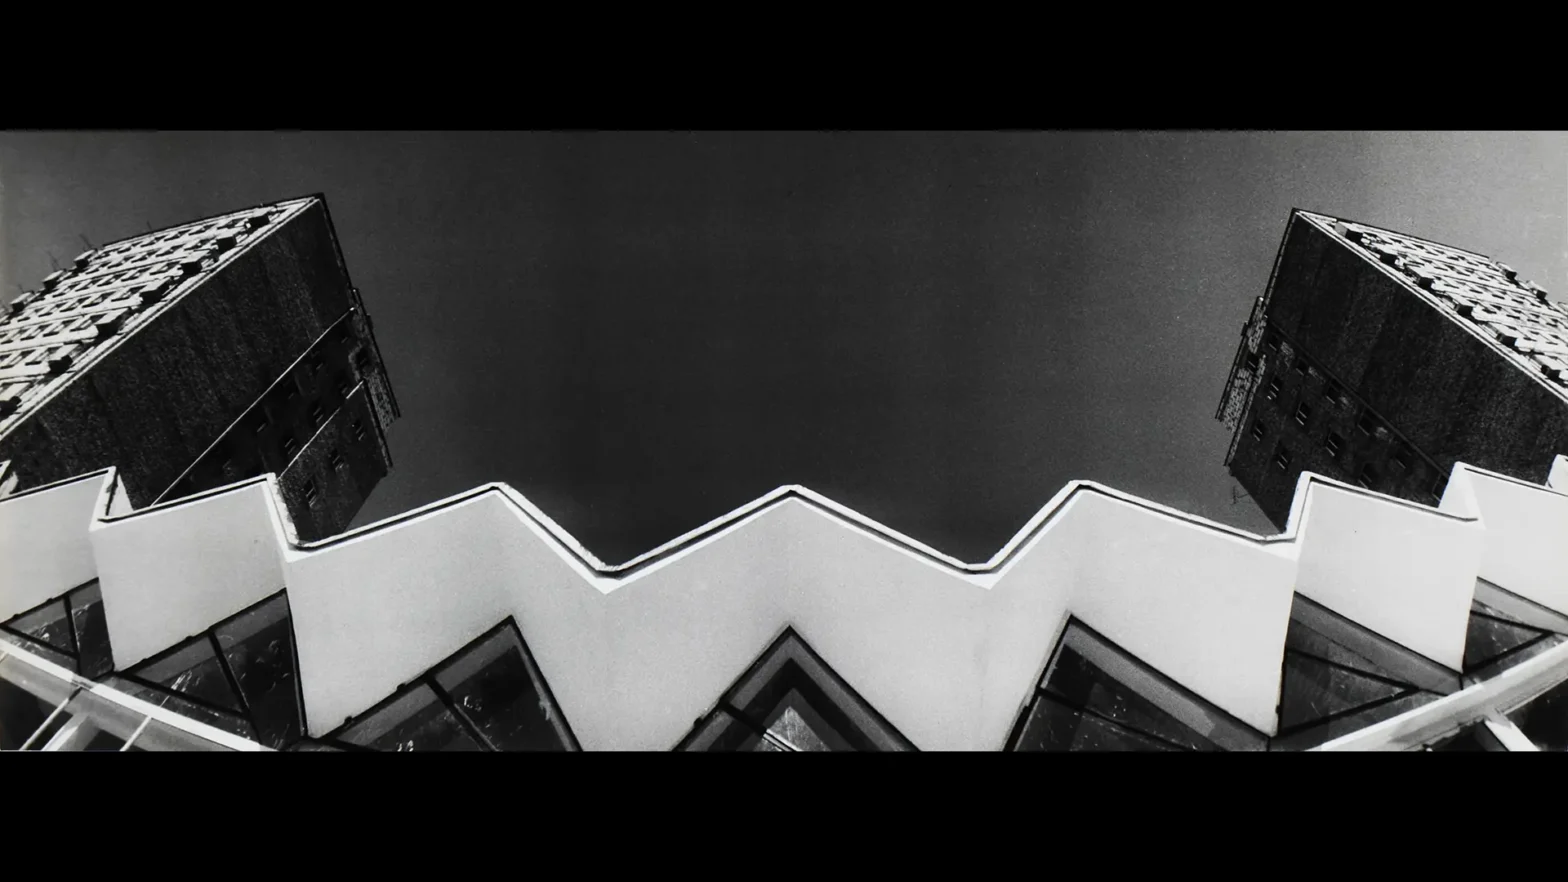 Autorem zdjęcia jest Ildefons Bańkowski, autorem reprodukcji zdjęcia jest Wojciech Woźniak. Zdjęcie przedstawia architekturę lat siedemdziesiątych. Wykonane jest z dołu w kolorze czarno białym. Przedstawia dwa bloki stojące na przeciwko siebie, połączone budowlą architektoniczną w kształcie zygzaka.